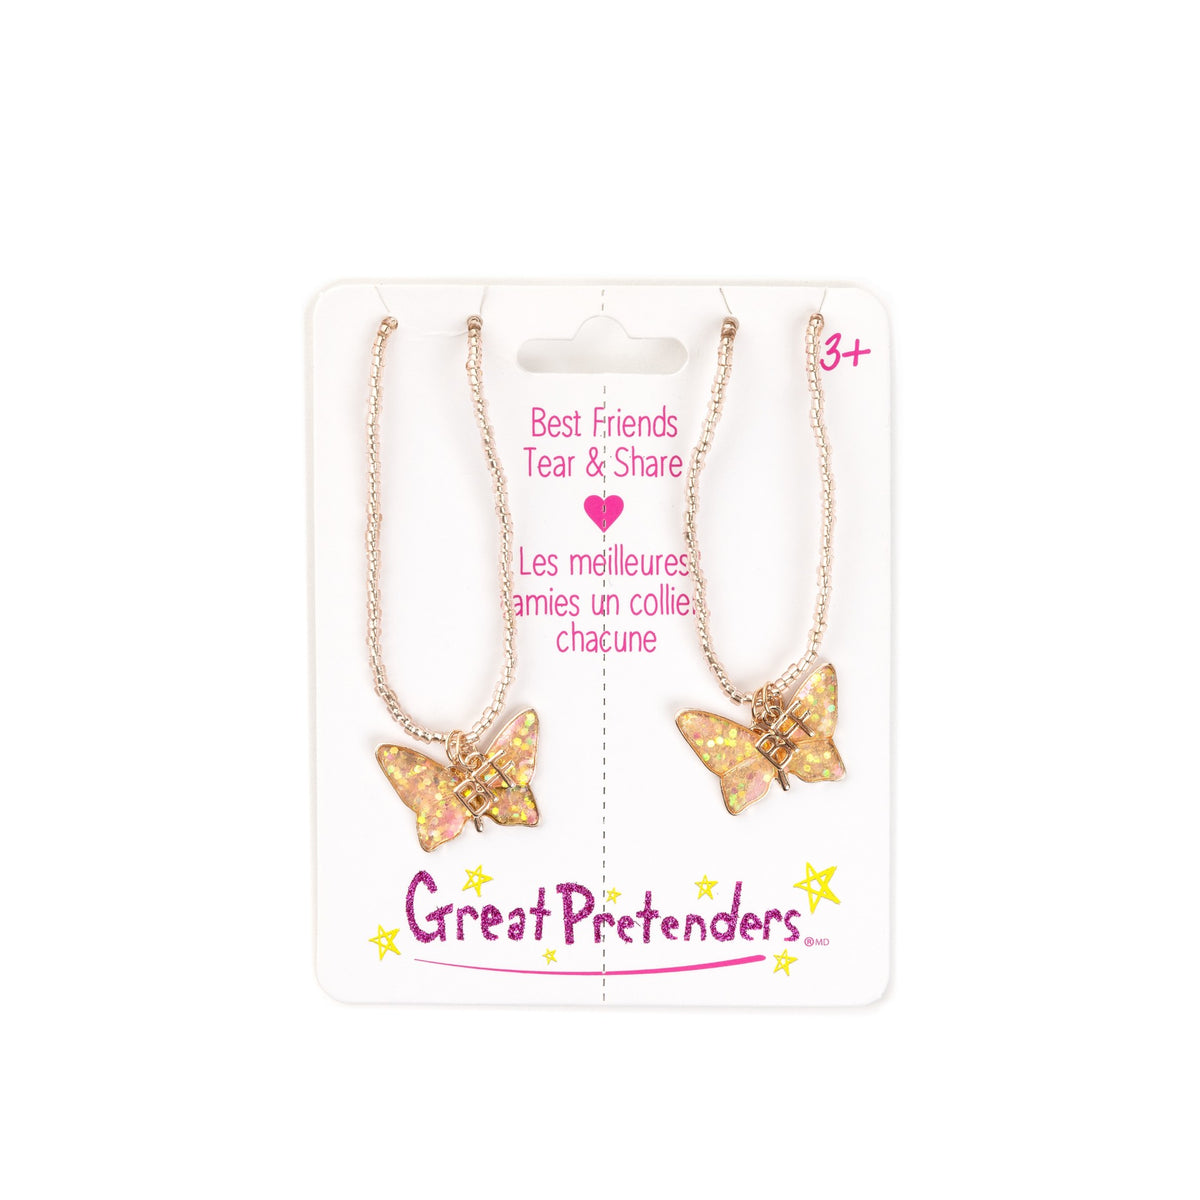 Schmetterlings-Halsketten für beste Freundinnen! Dieses 2er-Set besteht aus klaren, schillernden Perlen mit Schmetterlingen und BFF-Anhängern! Dieses Set ist das perfekte Geschenk für beste Freundinnen oder Geschwister!